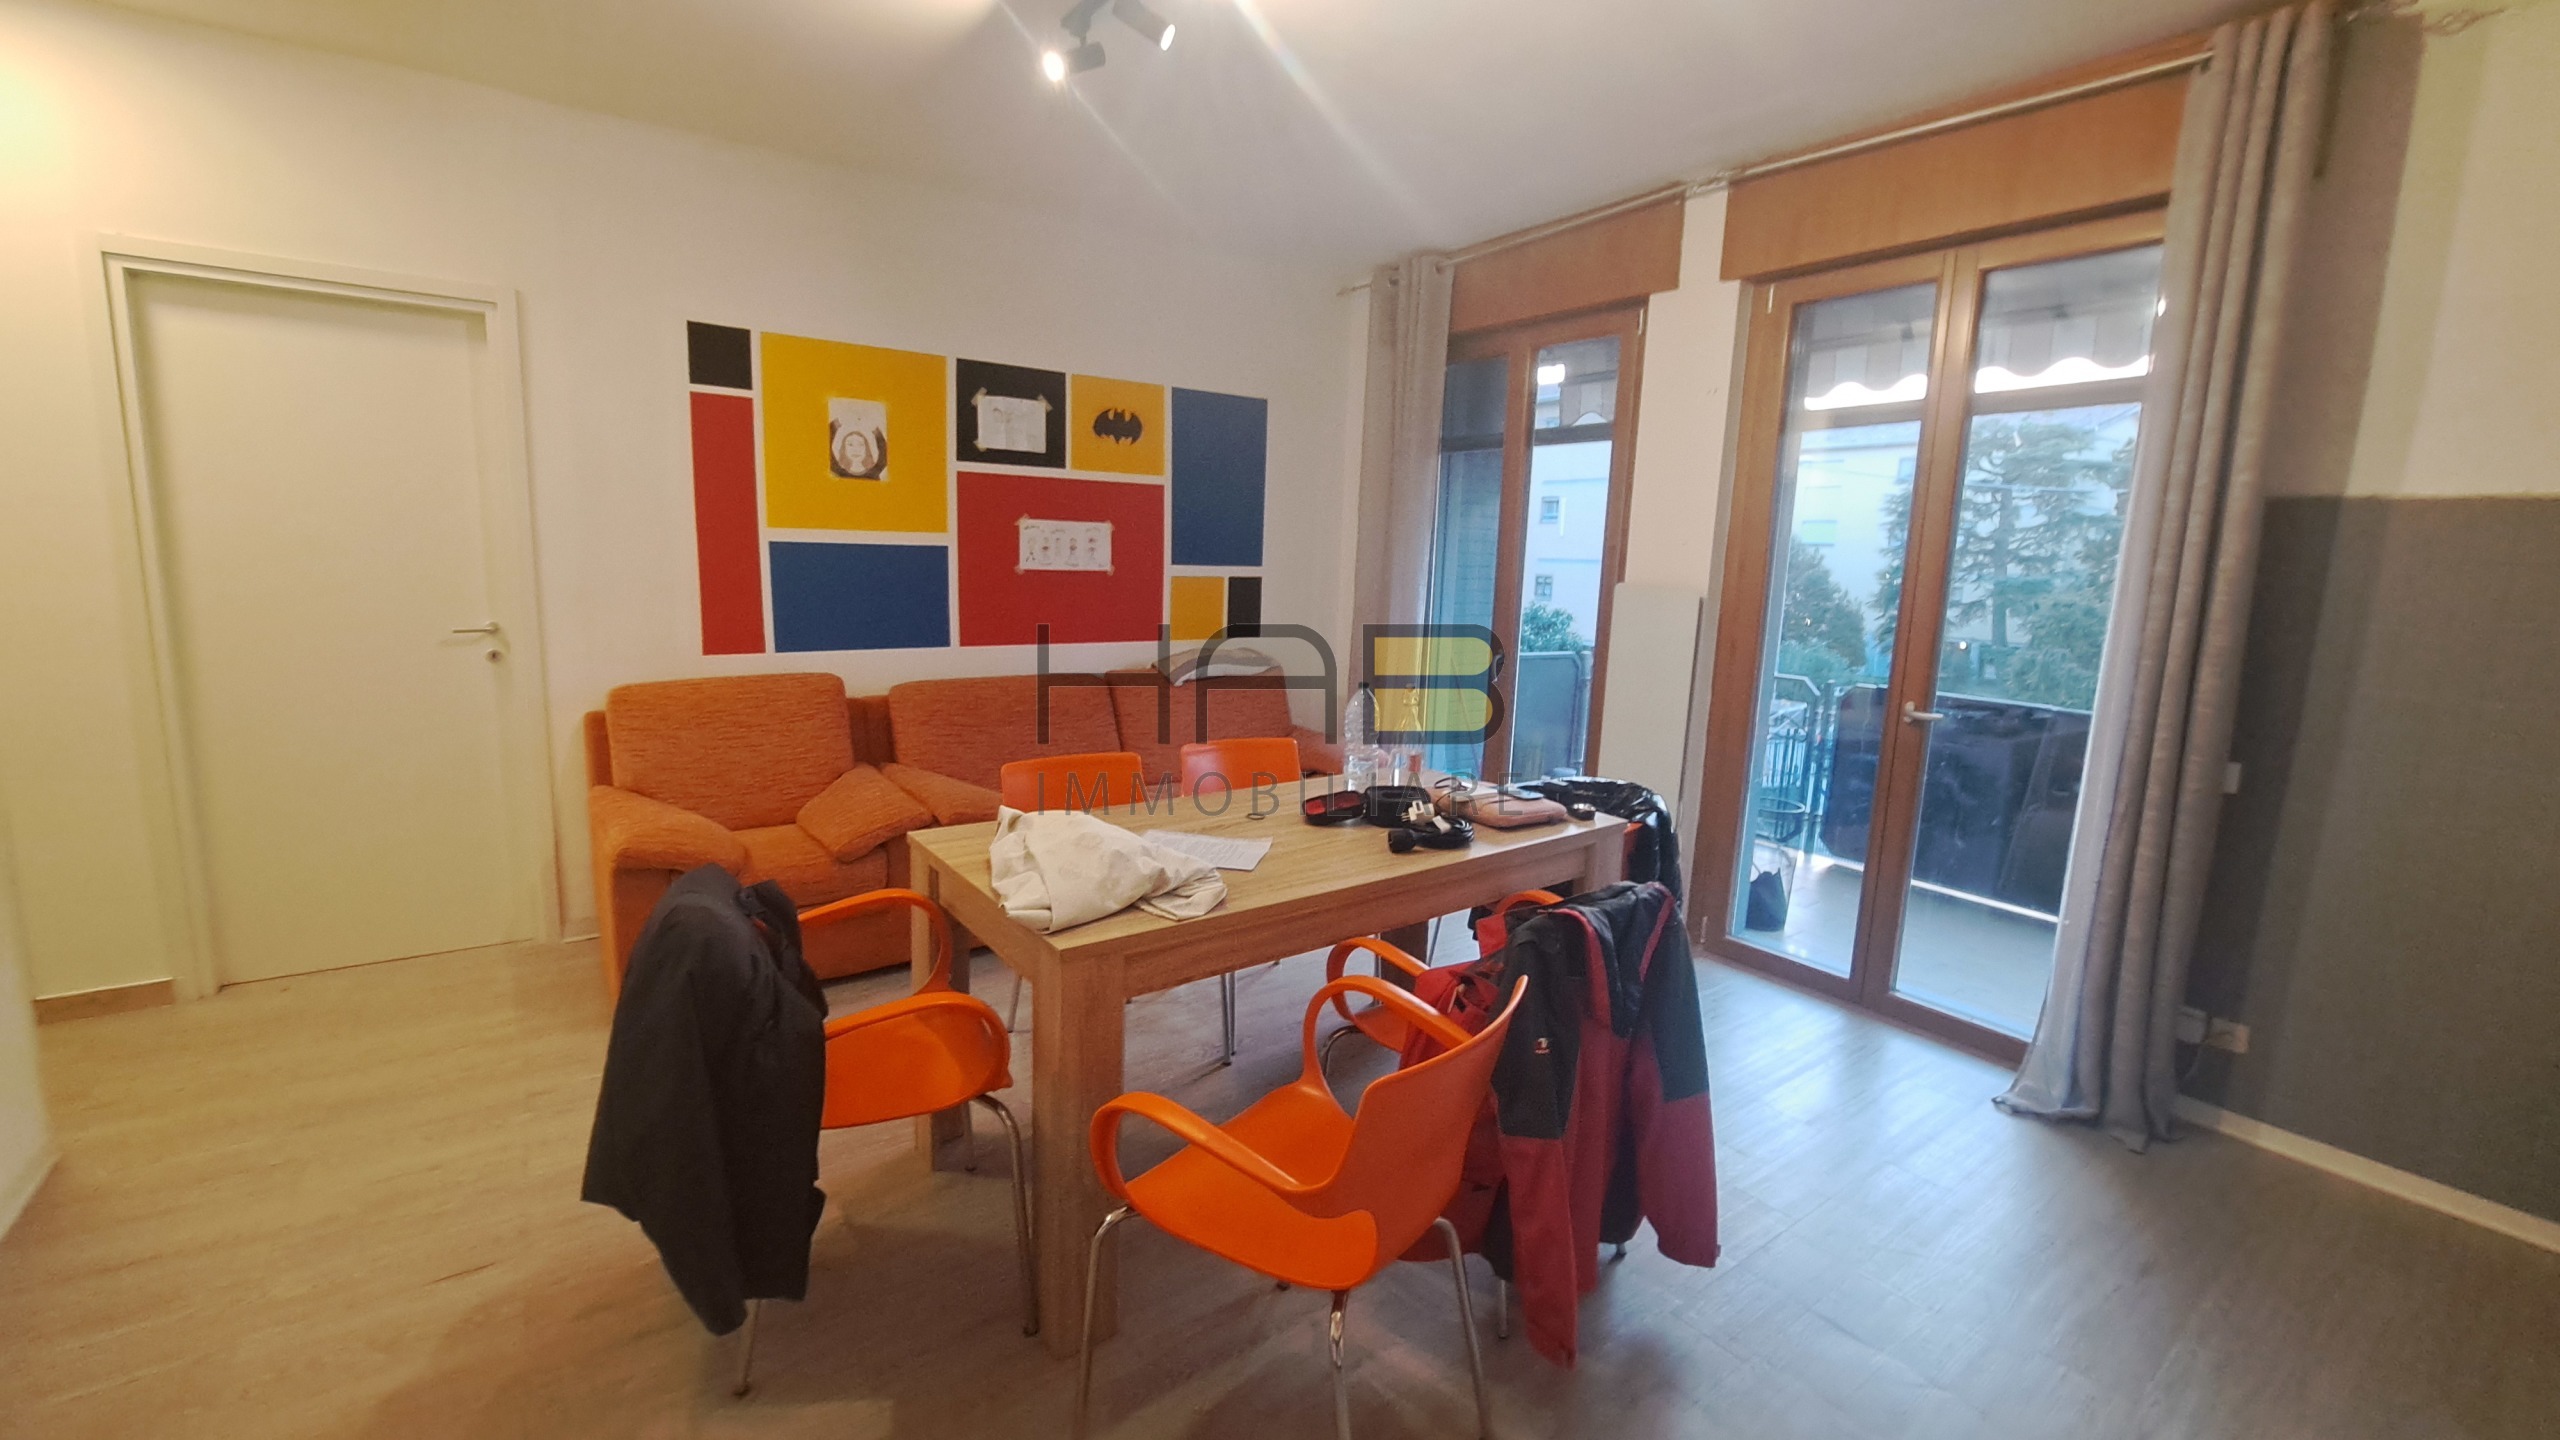 Appartamento ristrutturato in via maroncelli, Padova